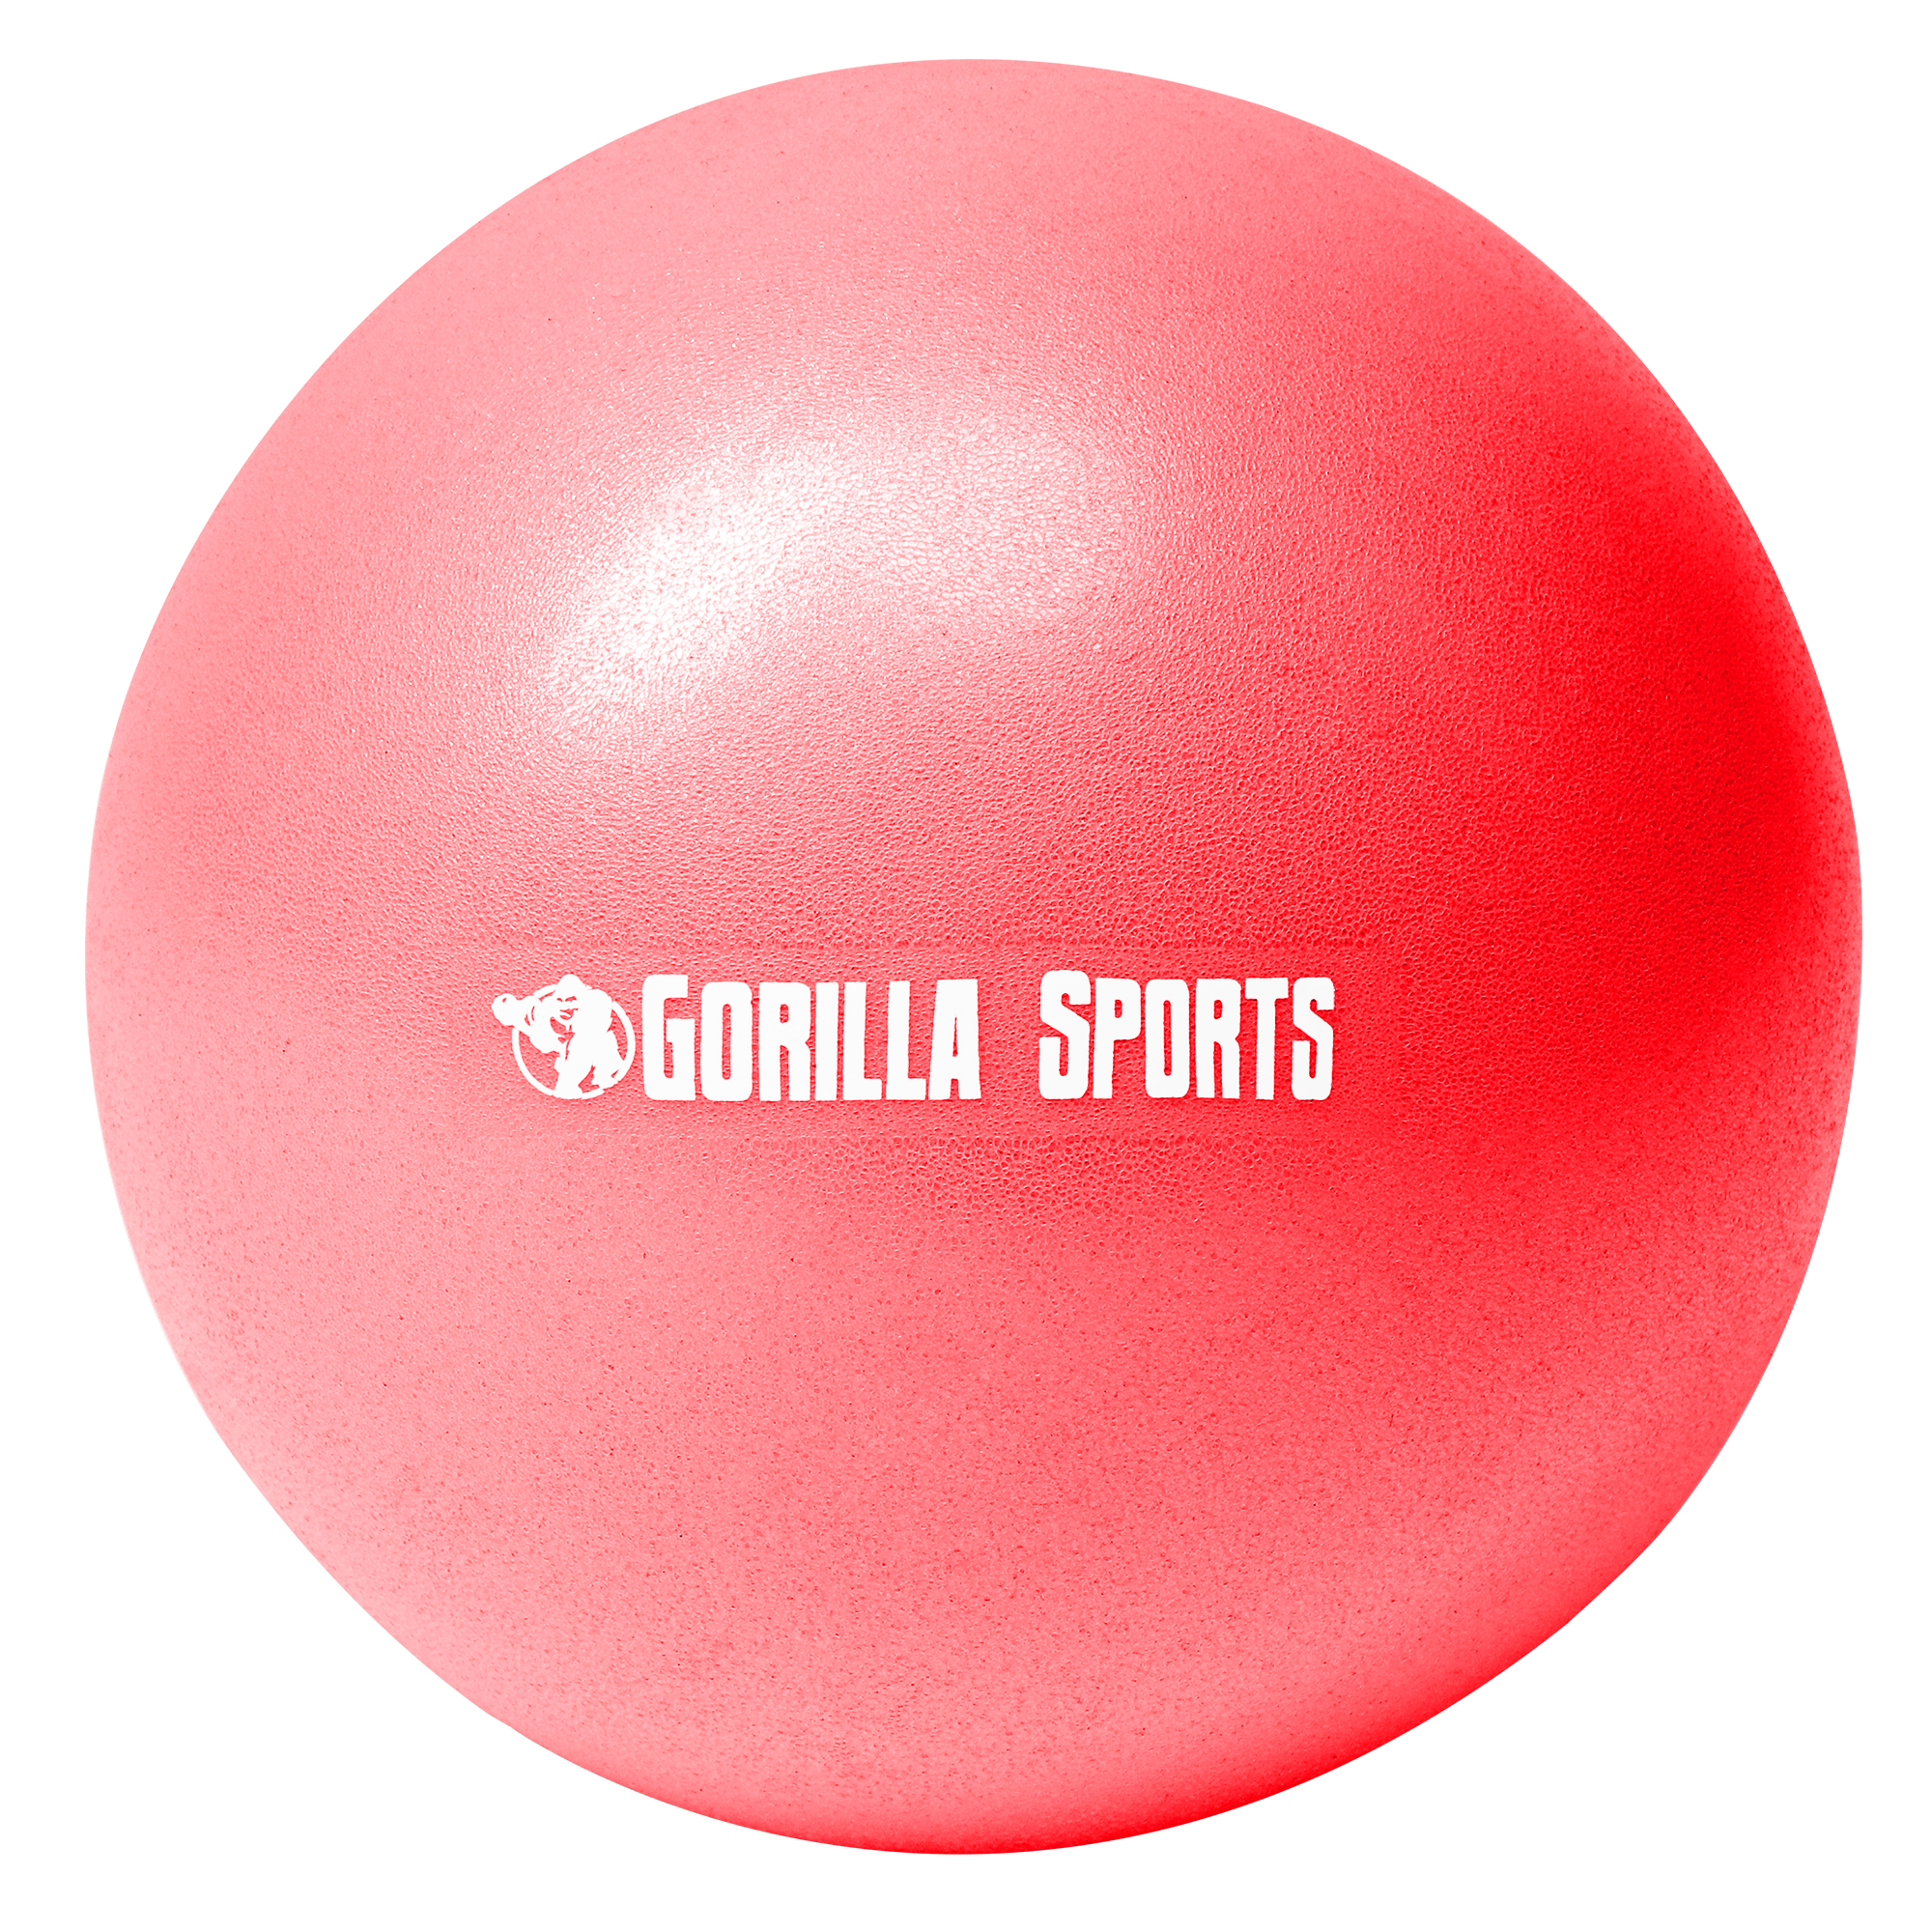 Mini-ballon d'exercice rouge, ballon lÃ©ger de Pilates Soft Ball - DiamÃ¨tre : 18 cm